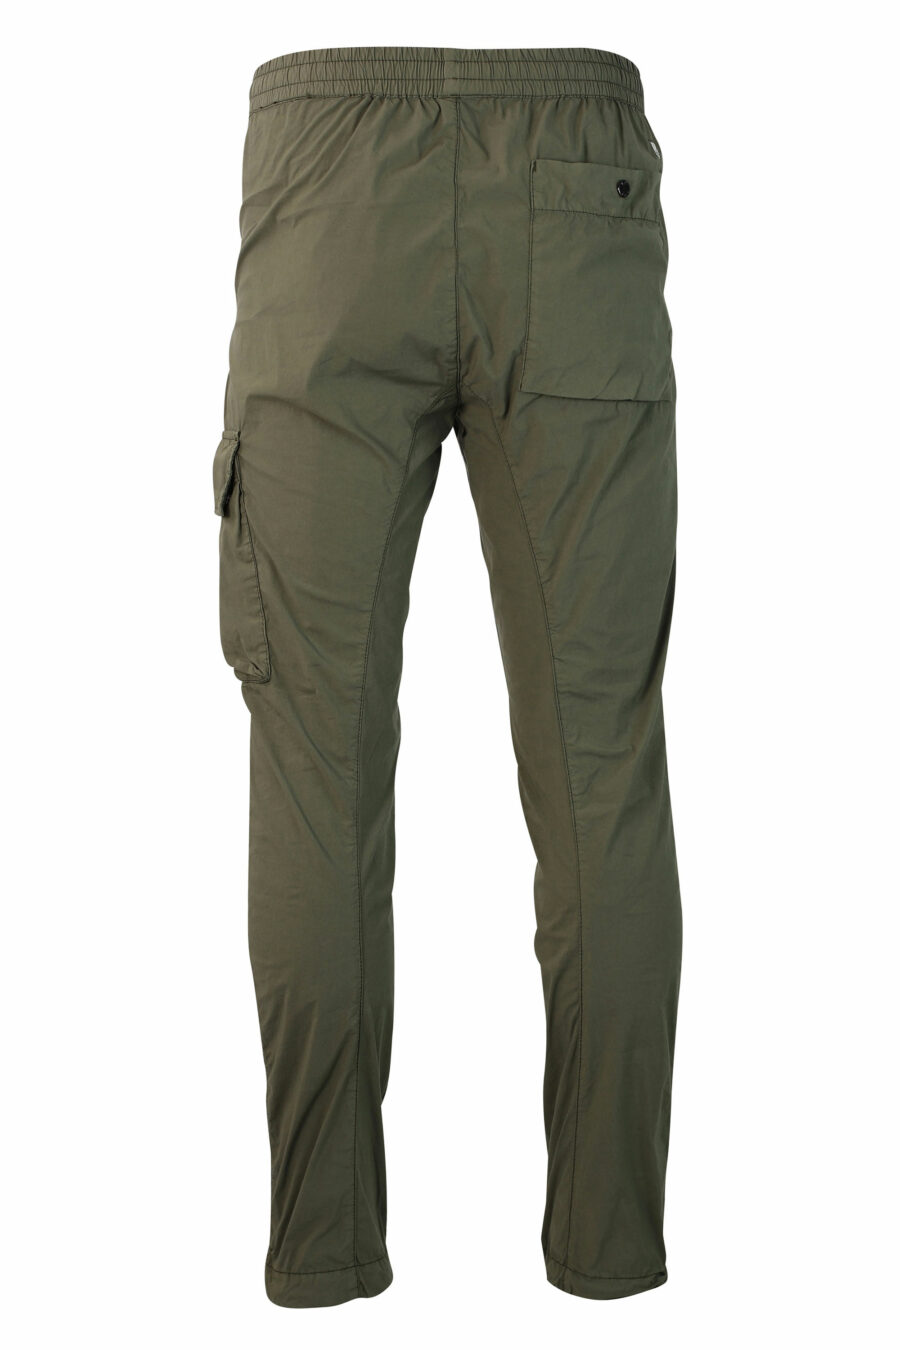 Pantalón verde militar con minilogo circular lateral - IMG 9857 1